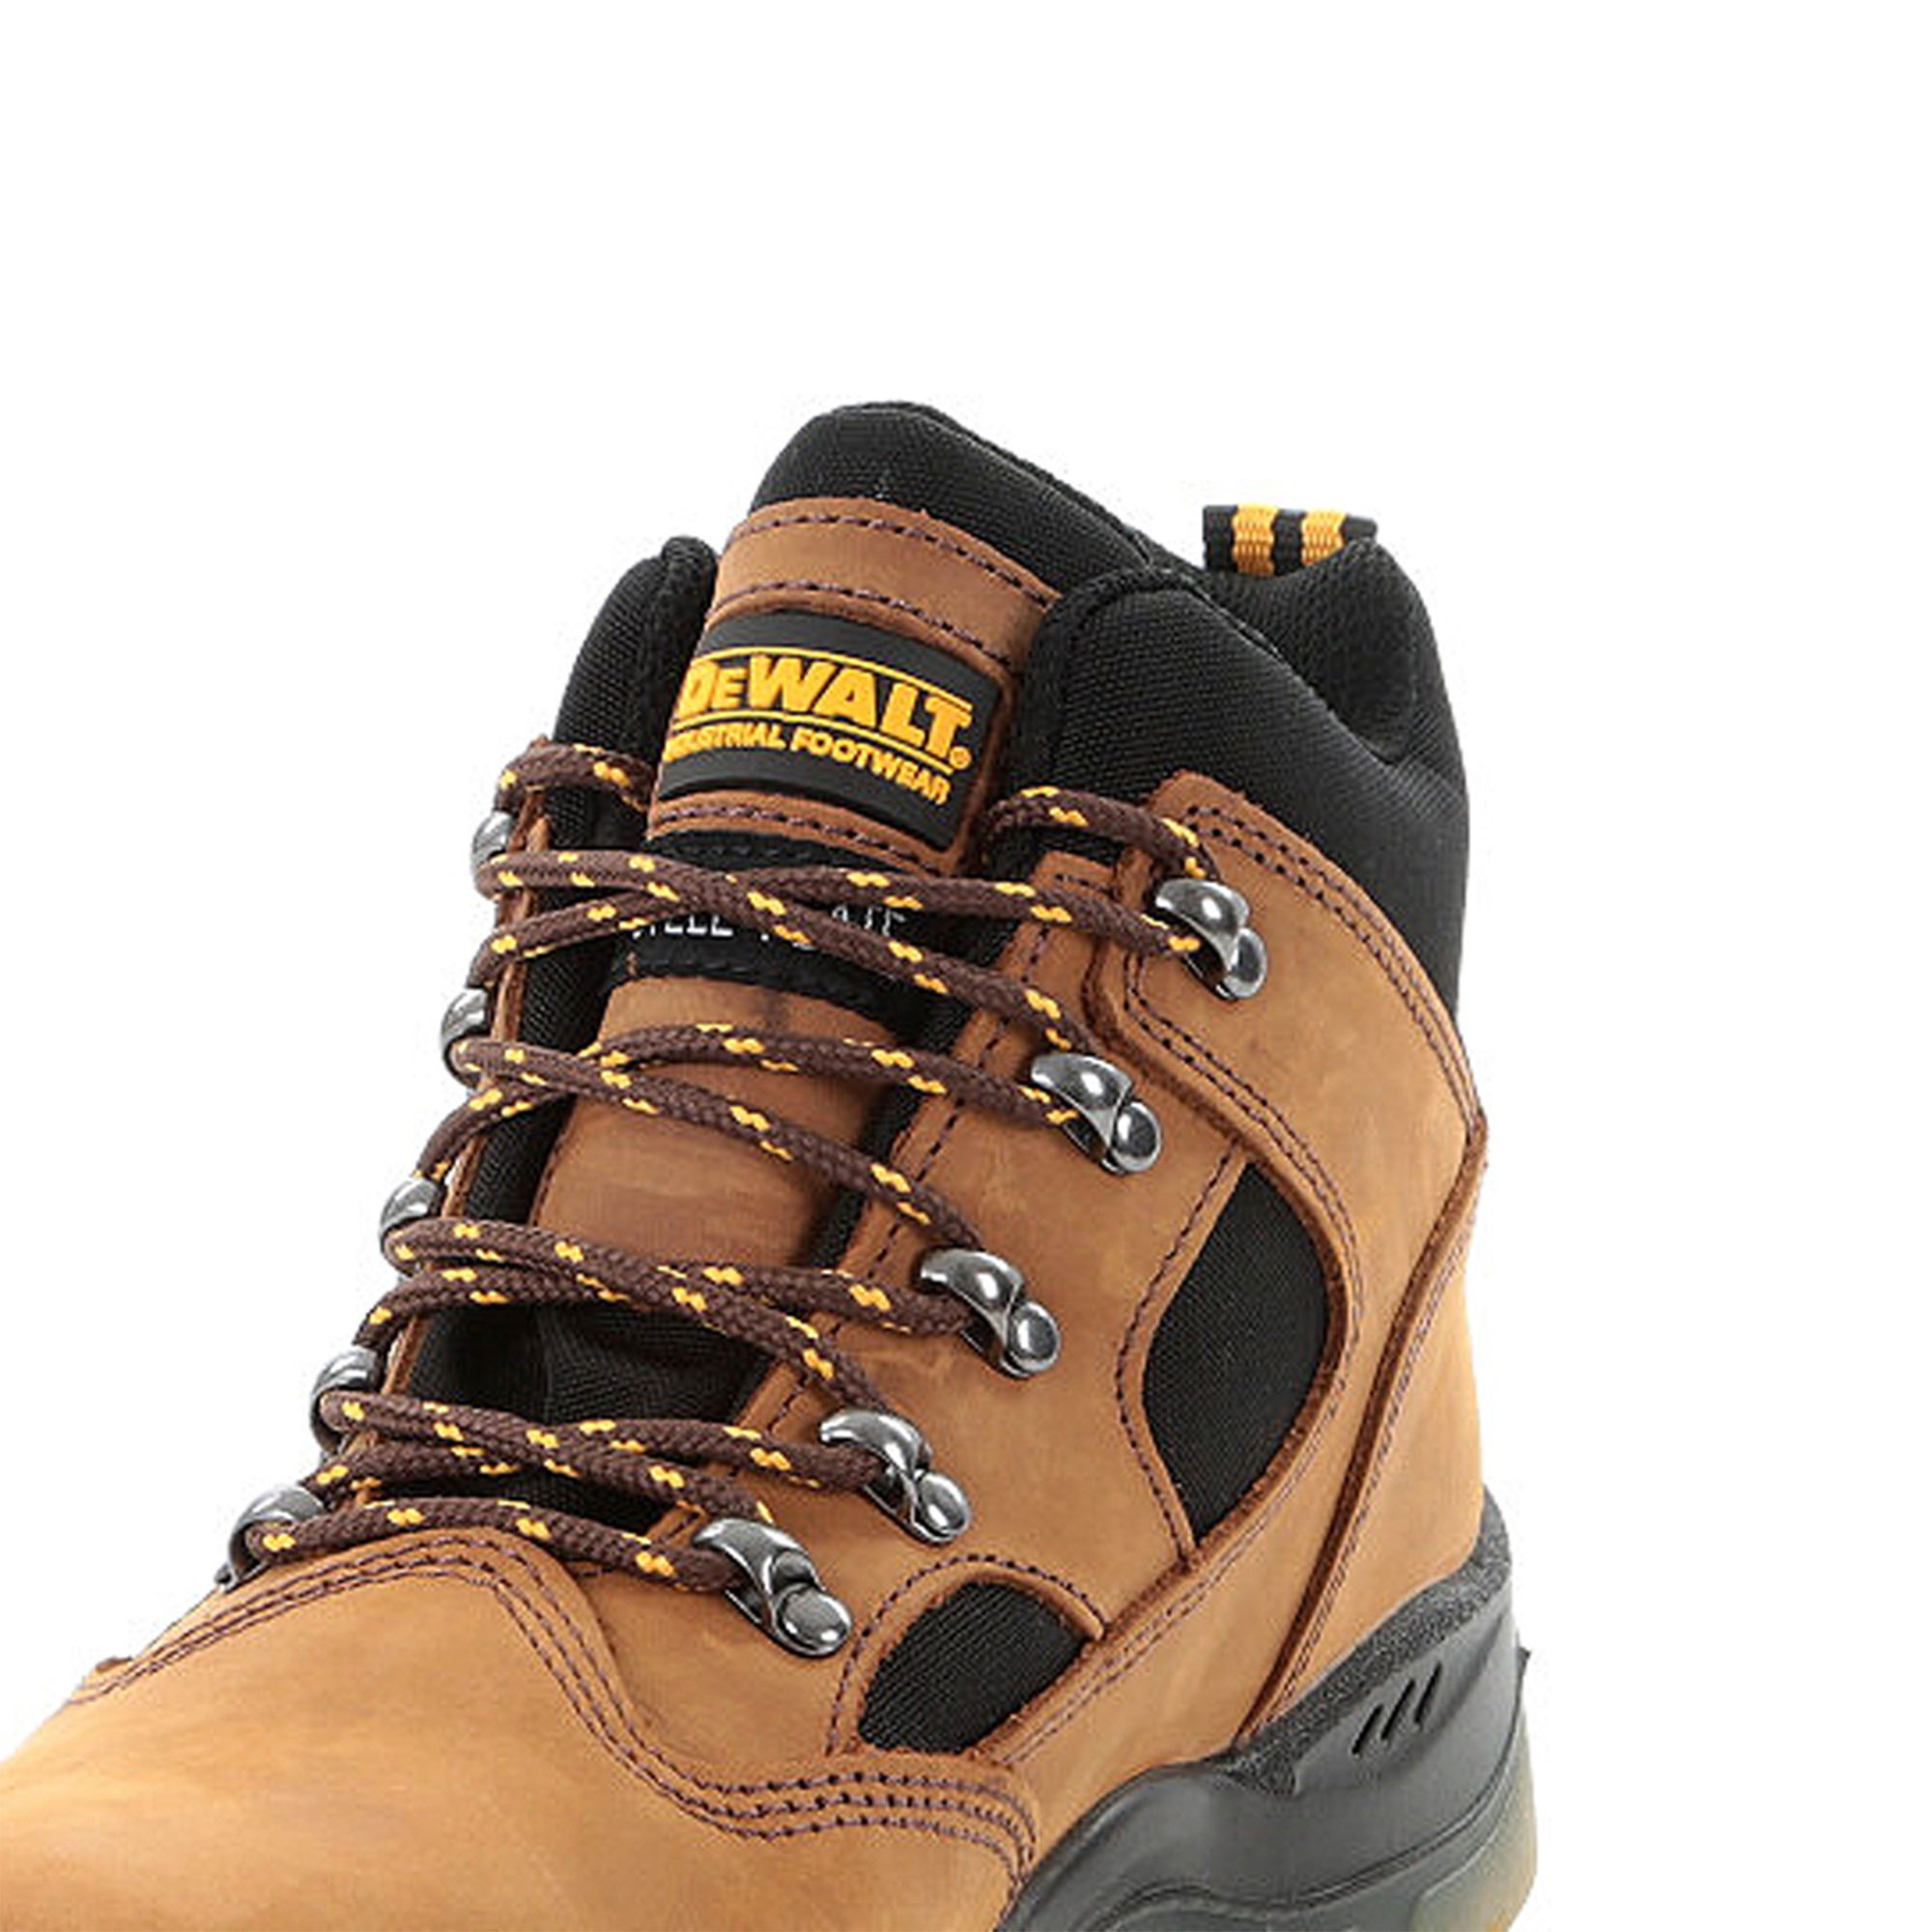 DeWalt Challenger Men's Brown Safety boots, Size 9